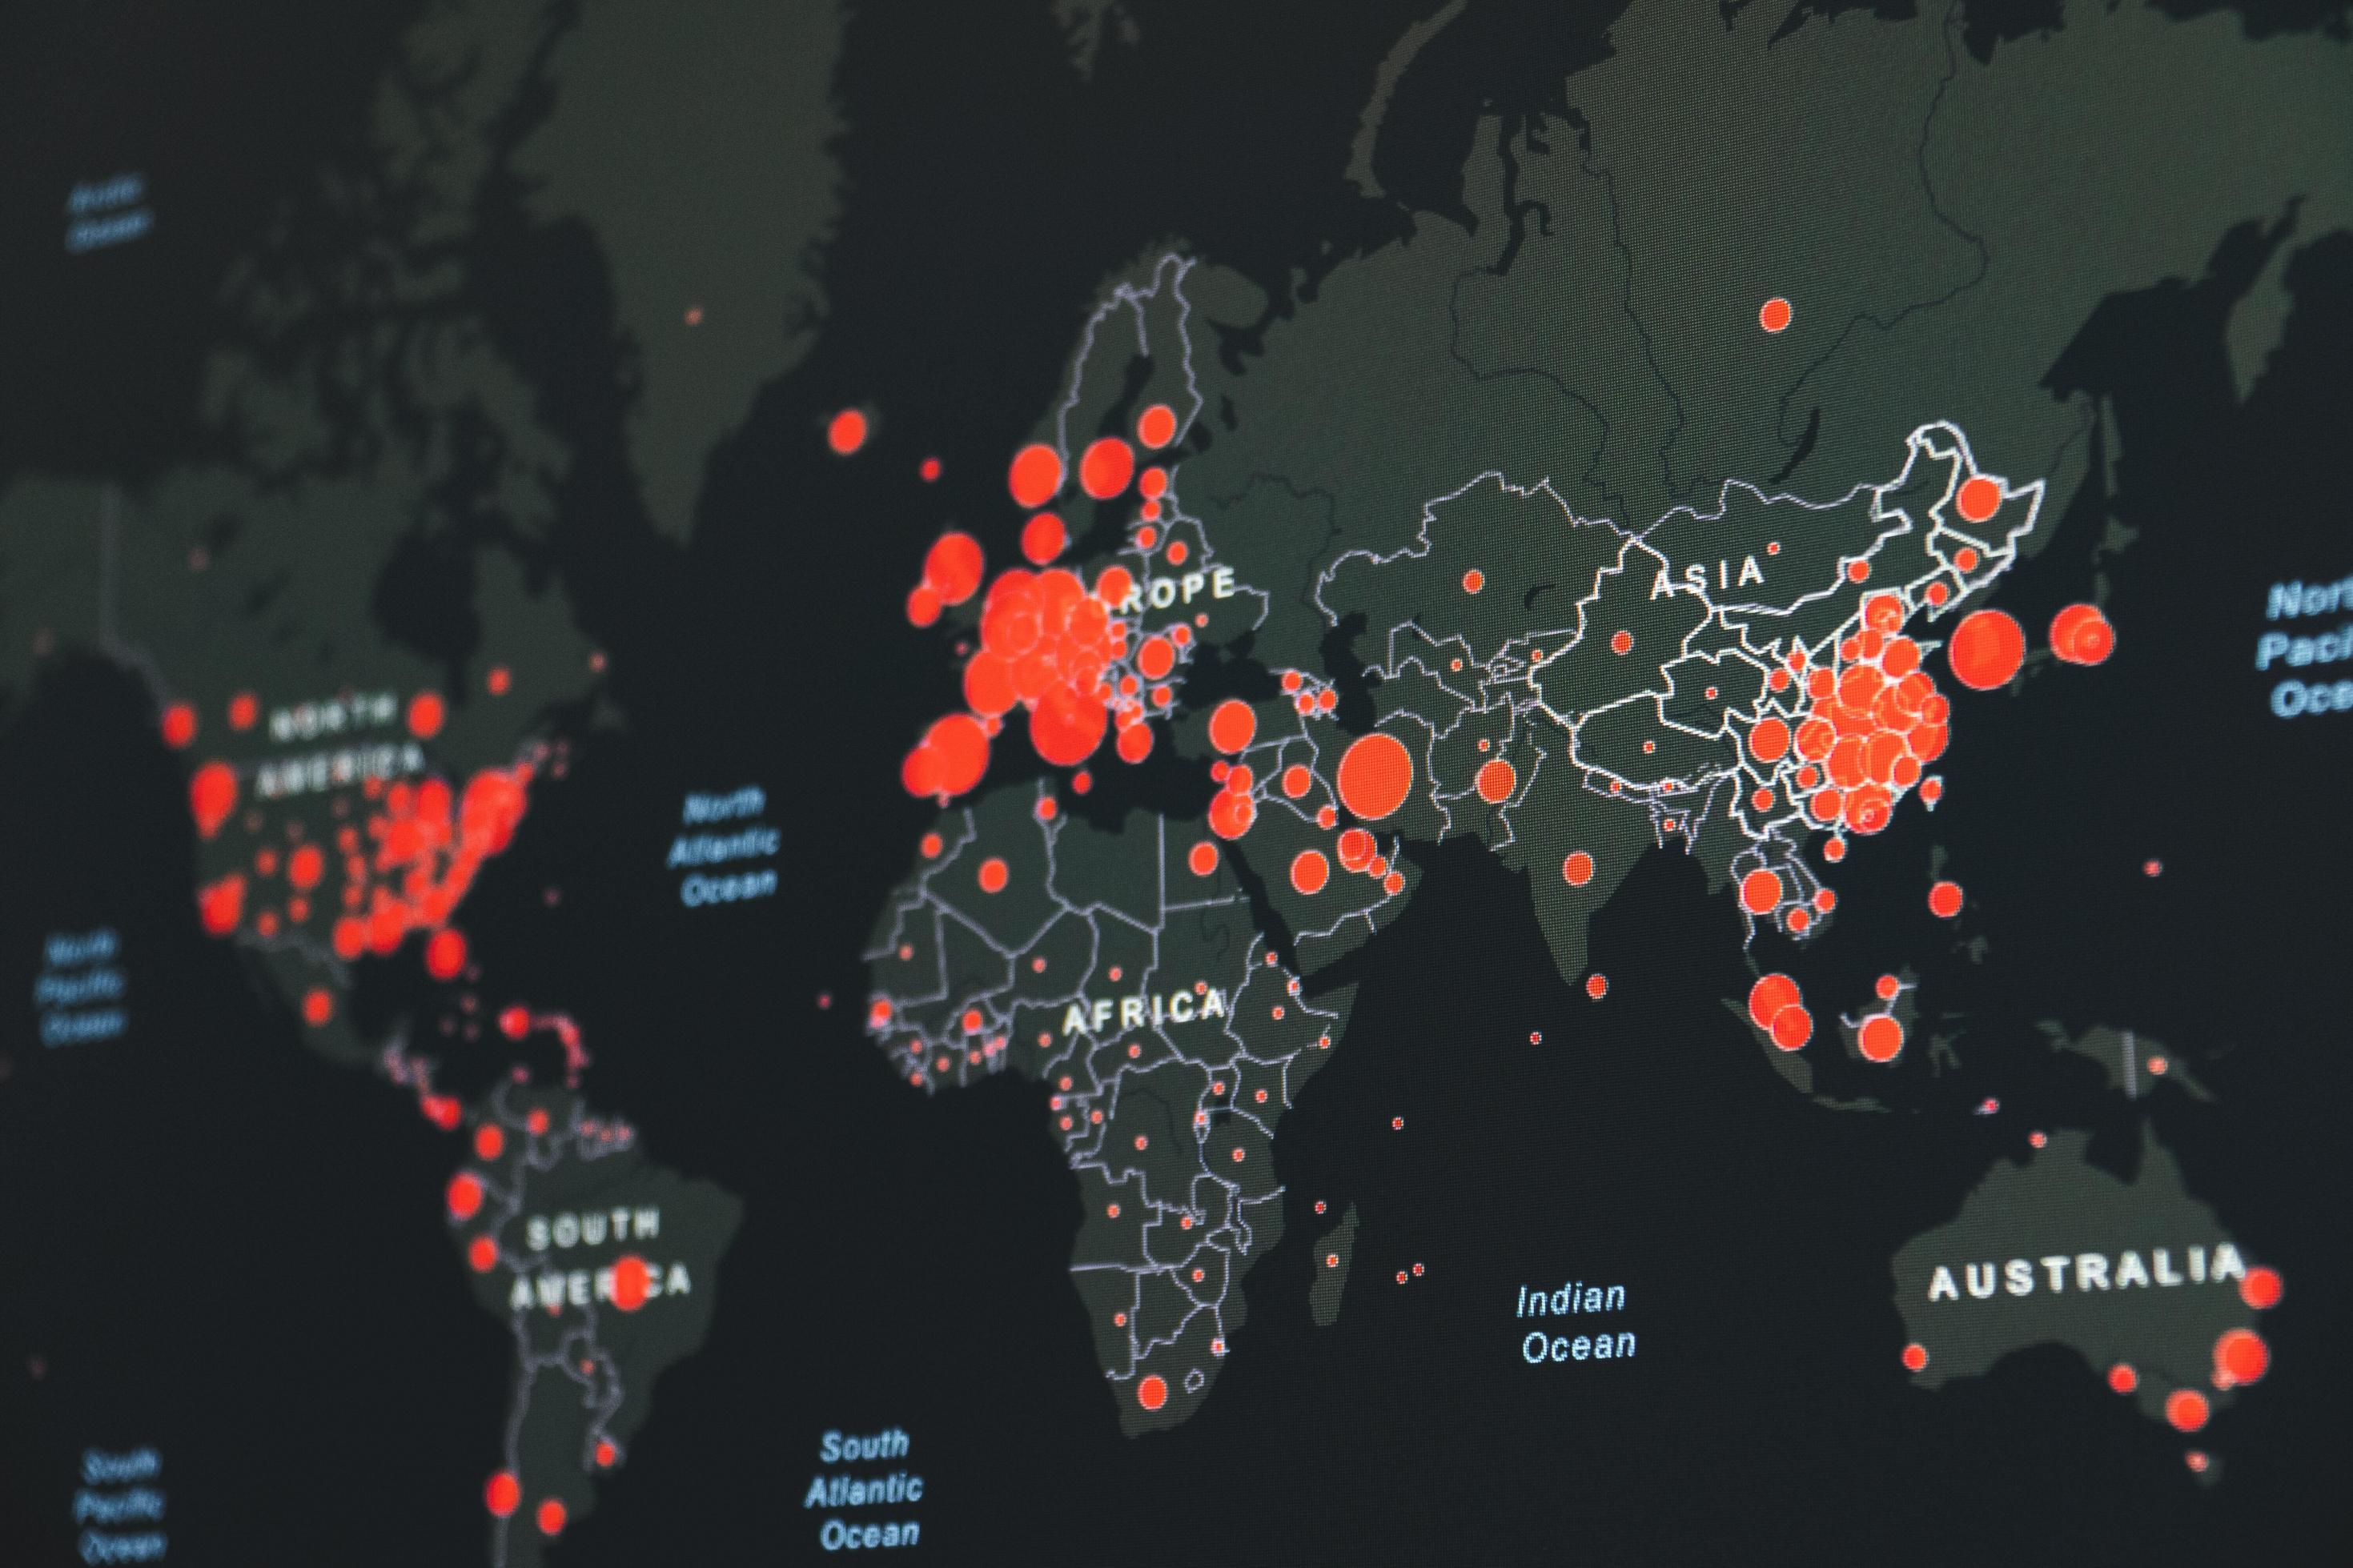 Auf der stilisierten Weltkarte wird mit unterschiedlich großen roten Punkten angezeigt, wo das Corona-Virus besonders stark verbreitet ist. In Afrika gibt es viele kleine Punkte. In den USA, in Europa und in China addieren sich die großen Punkte stellenweise zu roten Flächen.